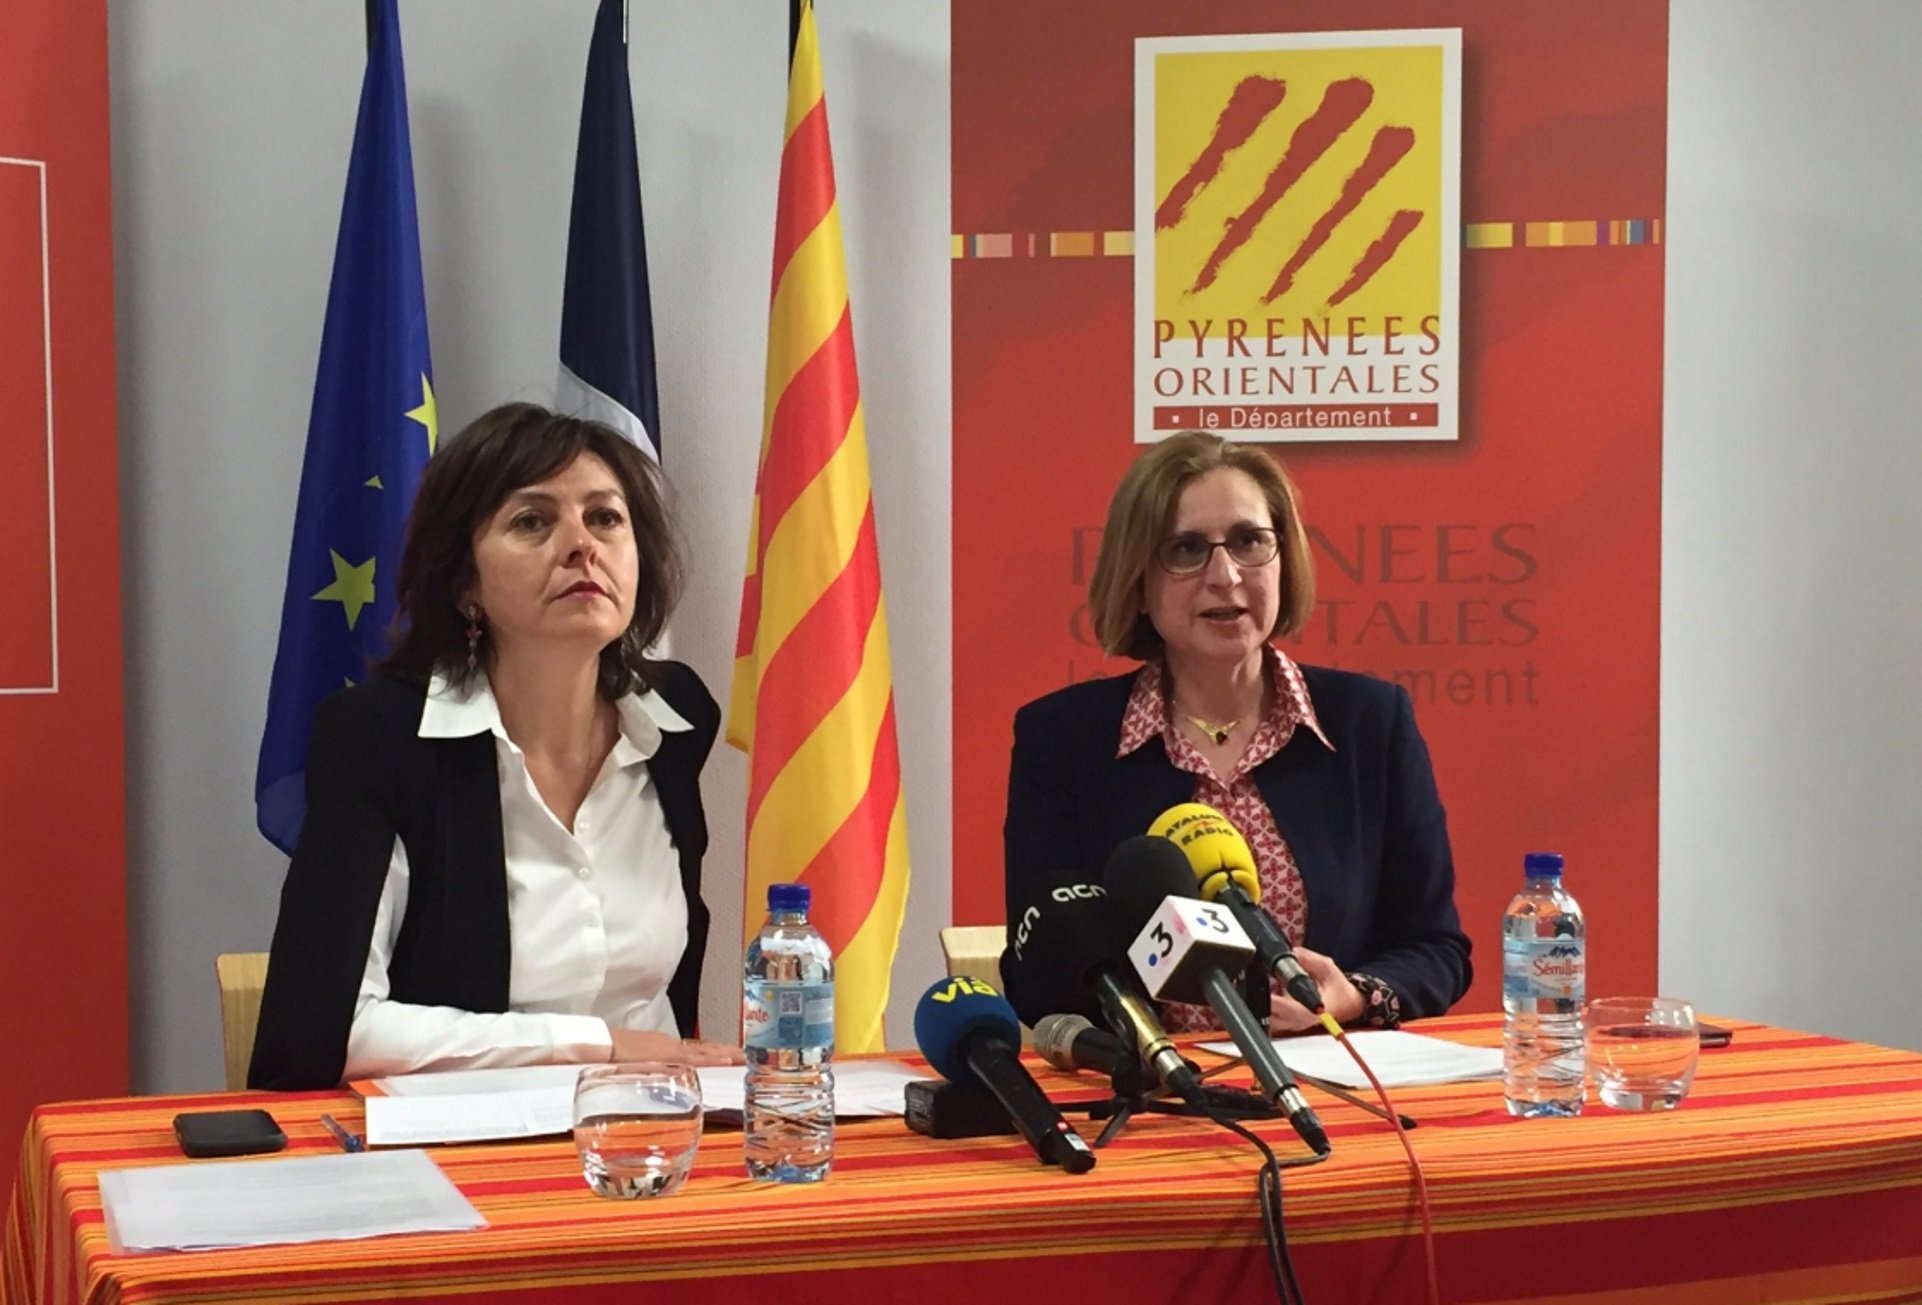 Más movimientos: Francia desencalla la oficina del catalán de Perpinyà